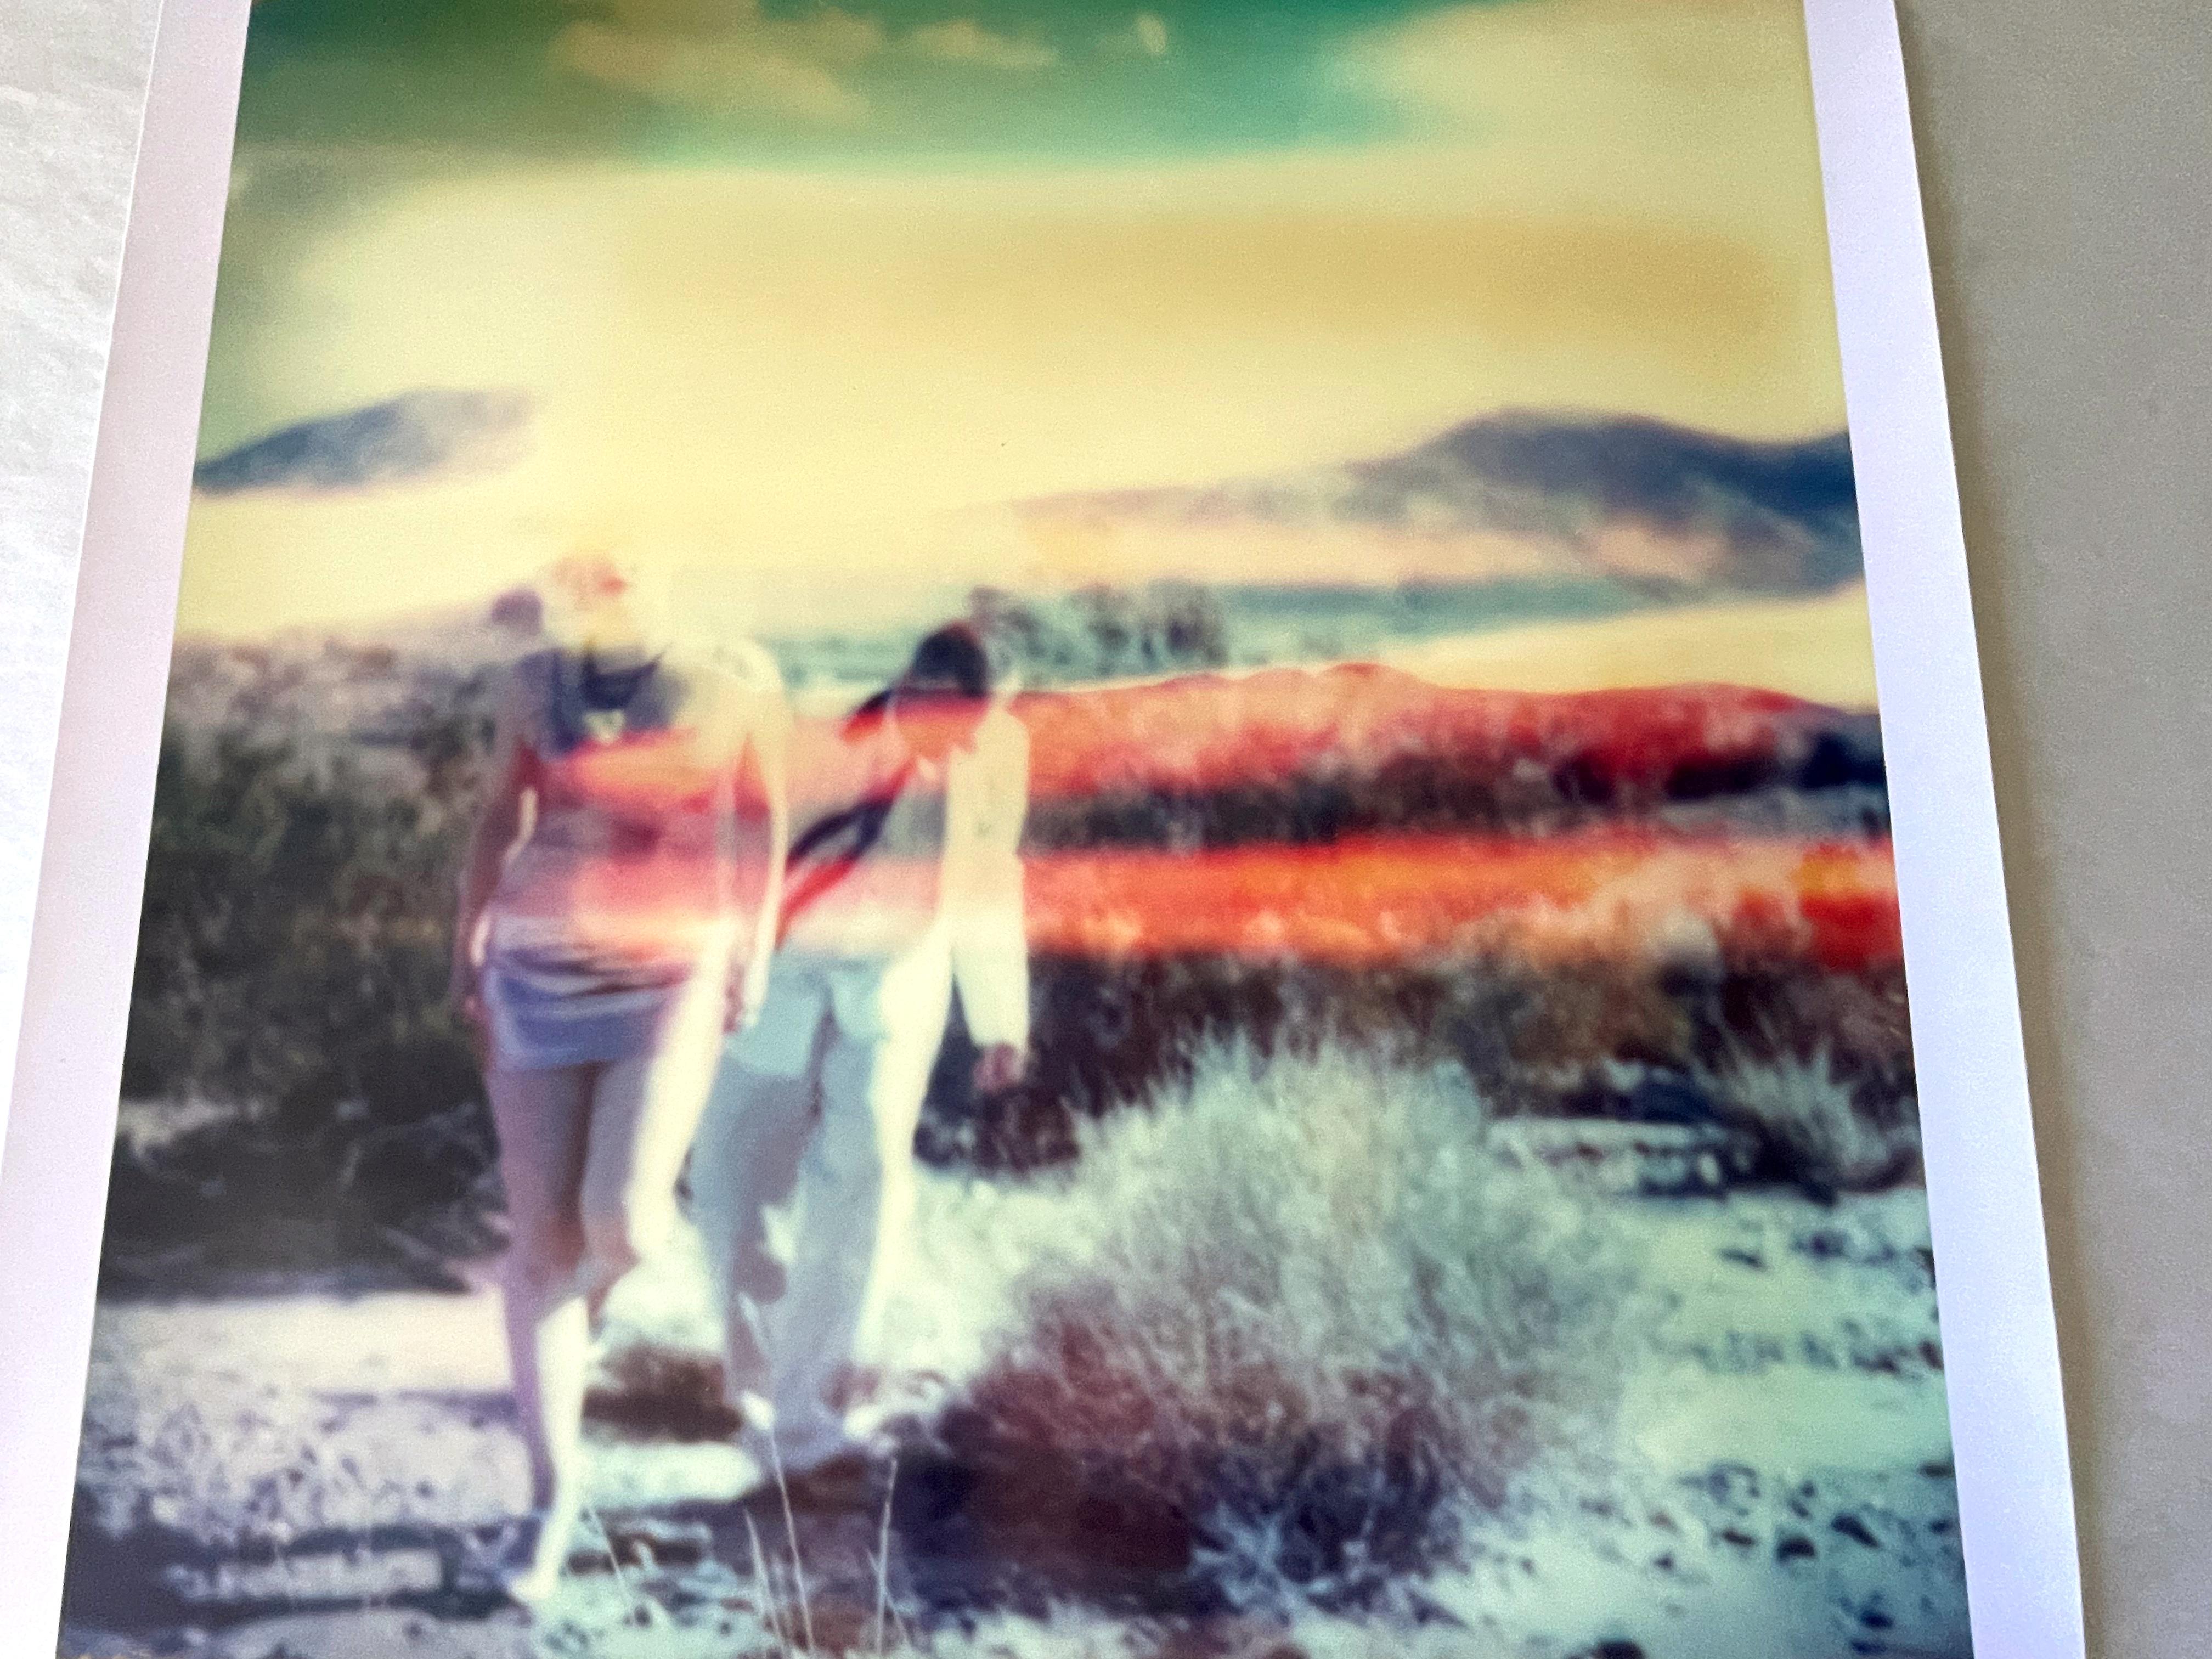 Memory of a Dream (29 Palms, CA) – Polaroid, 21. Jahrhundert, abgelaufen, zeitgenössisch (Zeitgenössisch), Photograph, von Stefanie Schneider